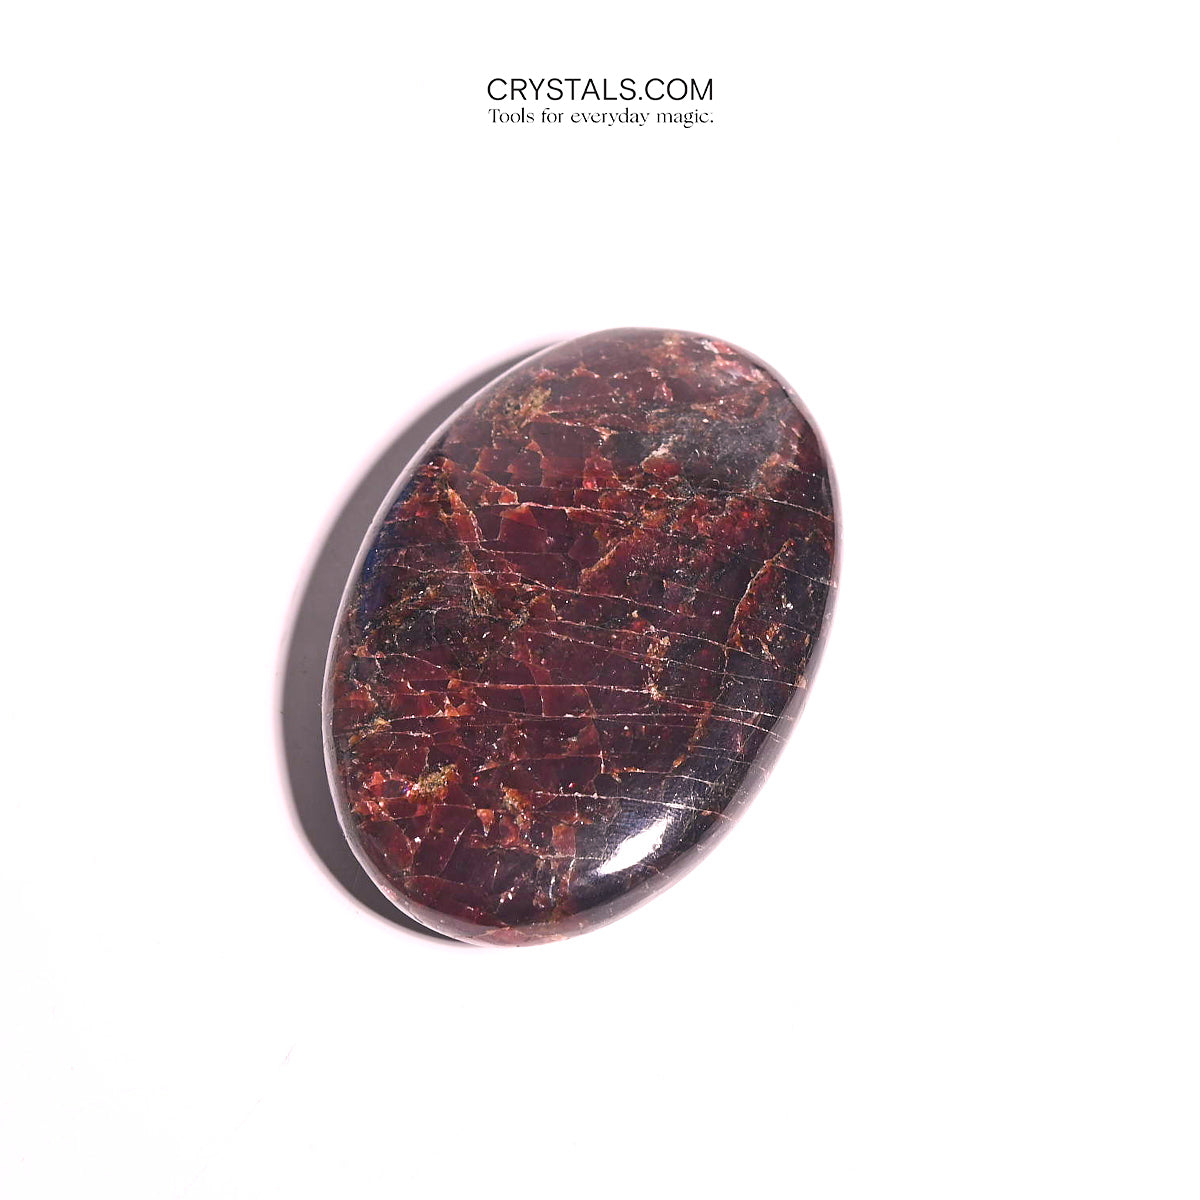 Garnet Crystal Palm Stone –